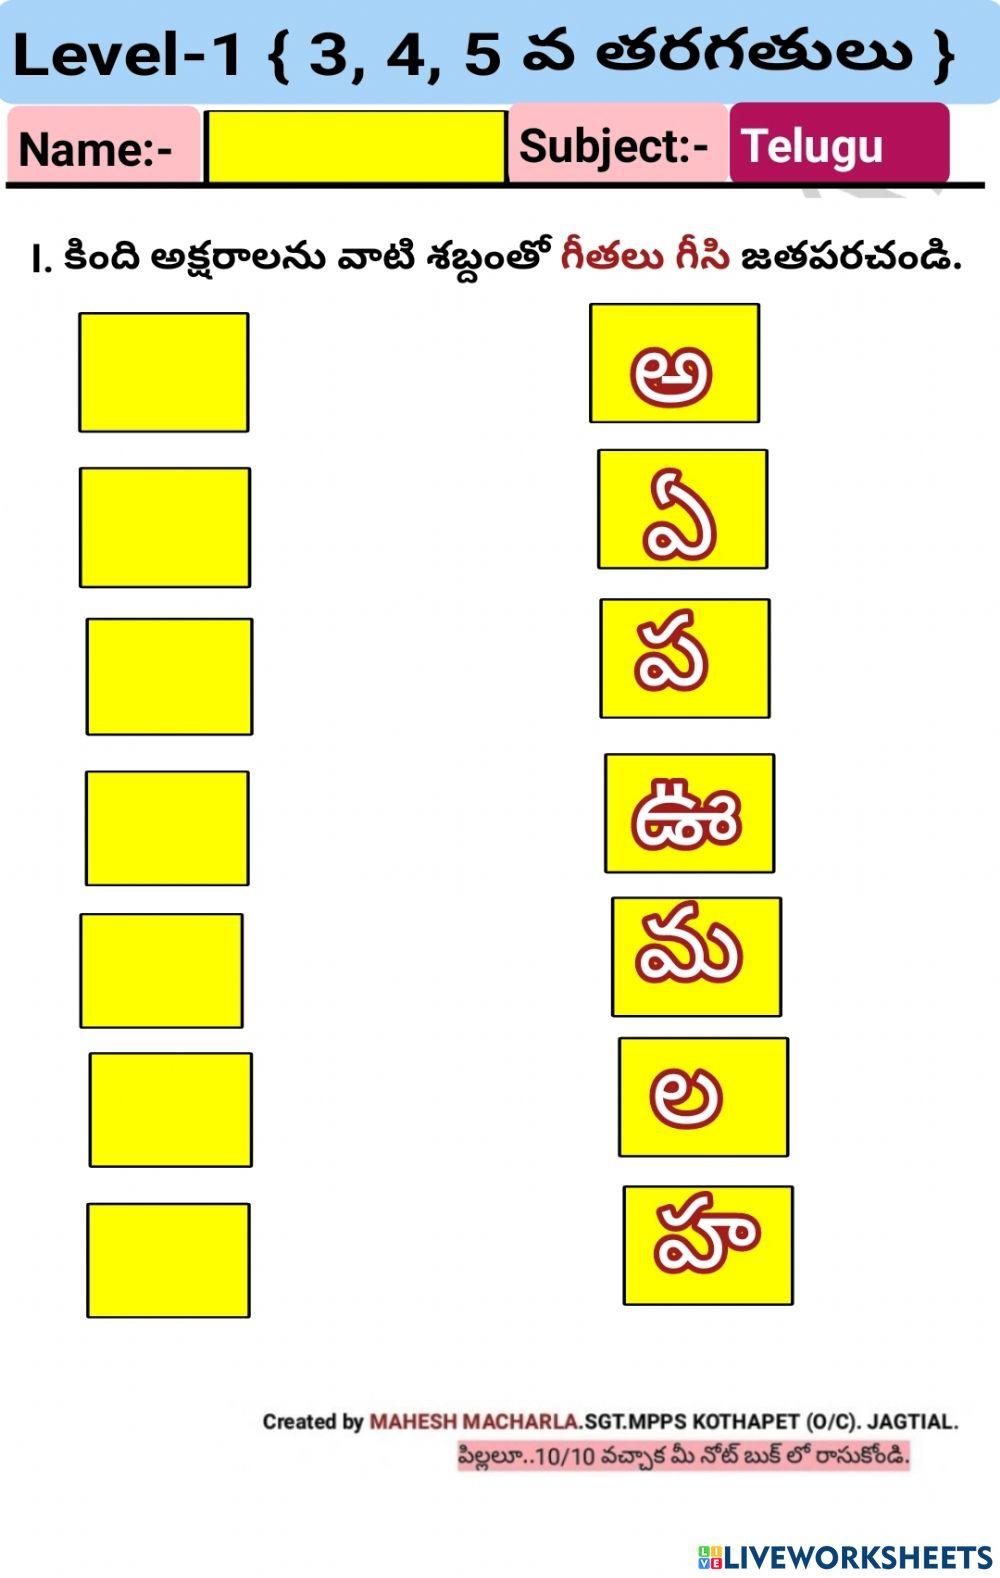 Level-1-Telugu-WS-1